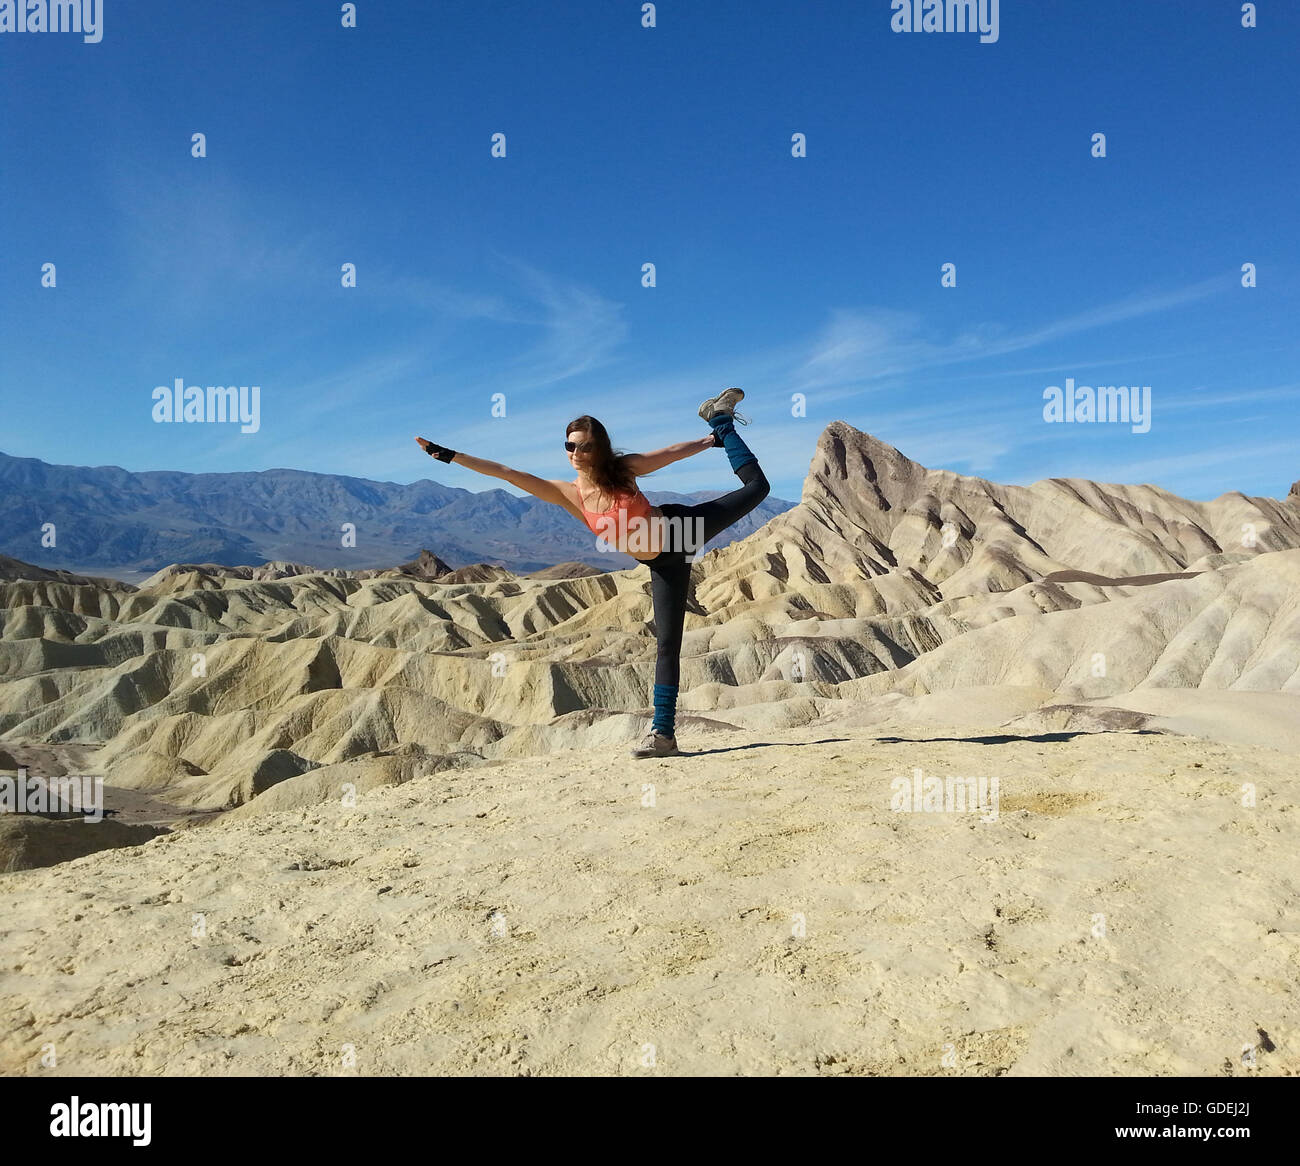 Las mujeres que hacen una bailarina de yoga posan en el desierto, Parque Nacional del Valle de la muerte, California, Estados Unidos Foto de stock